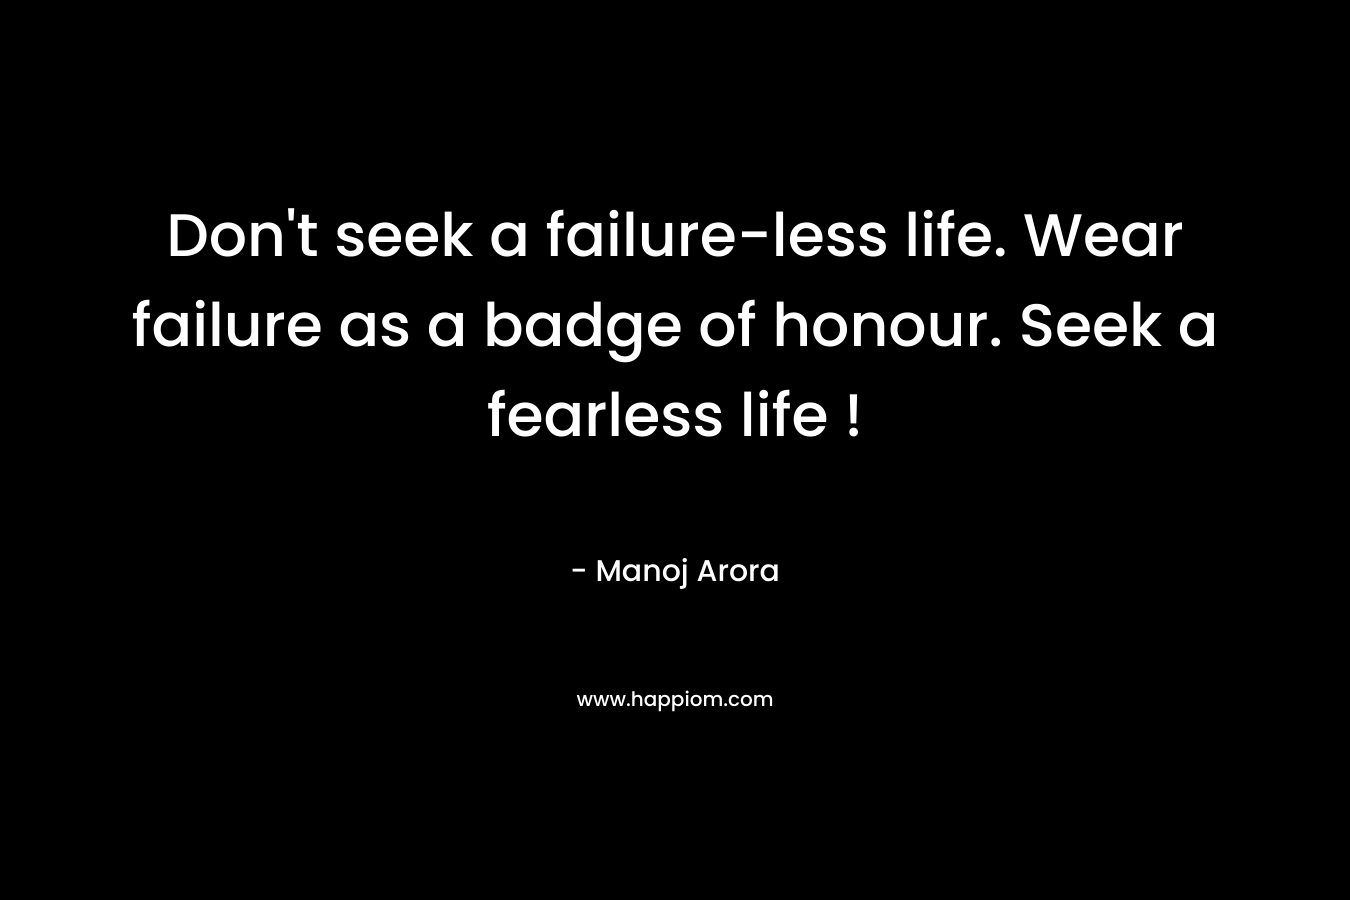 Don't seek a failure-less life. Wear failure as a badge of honour. Seek a fearless life !